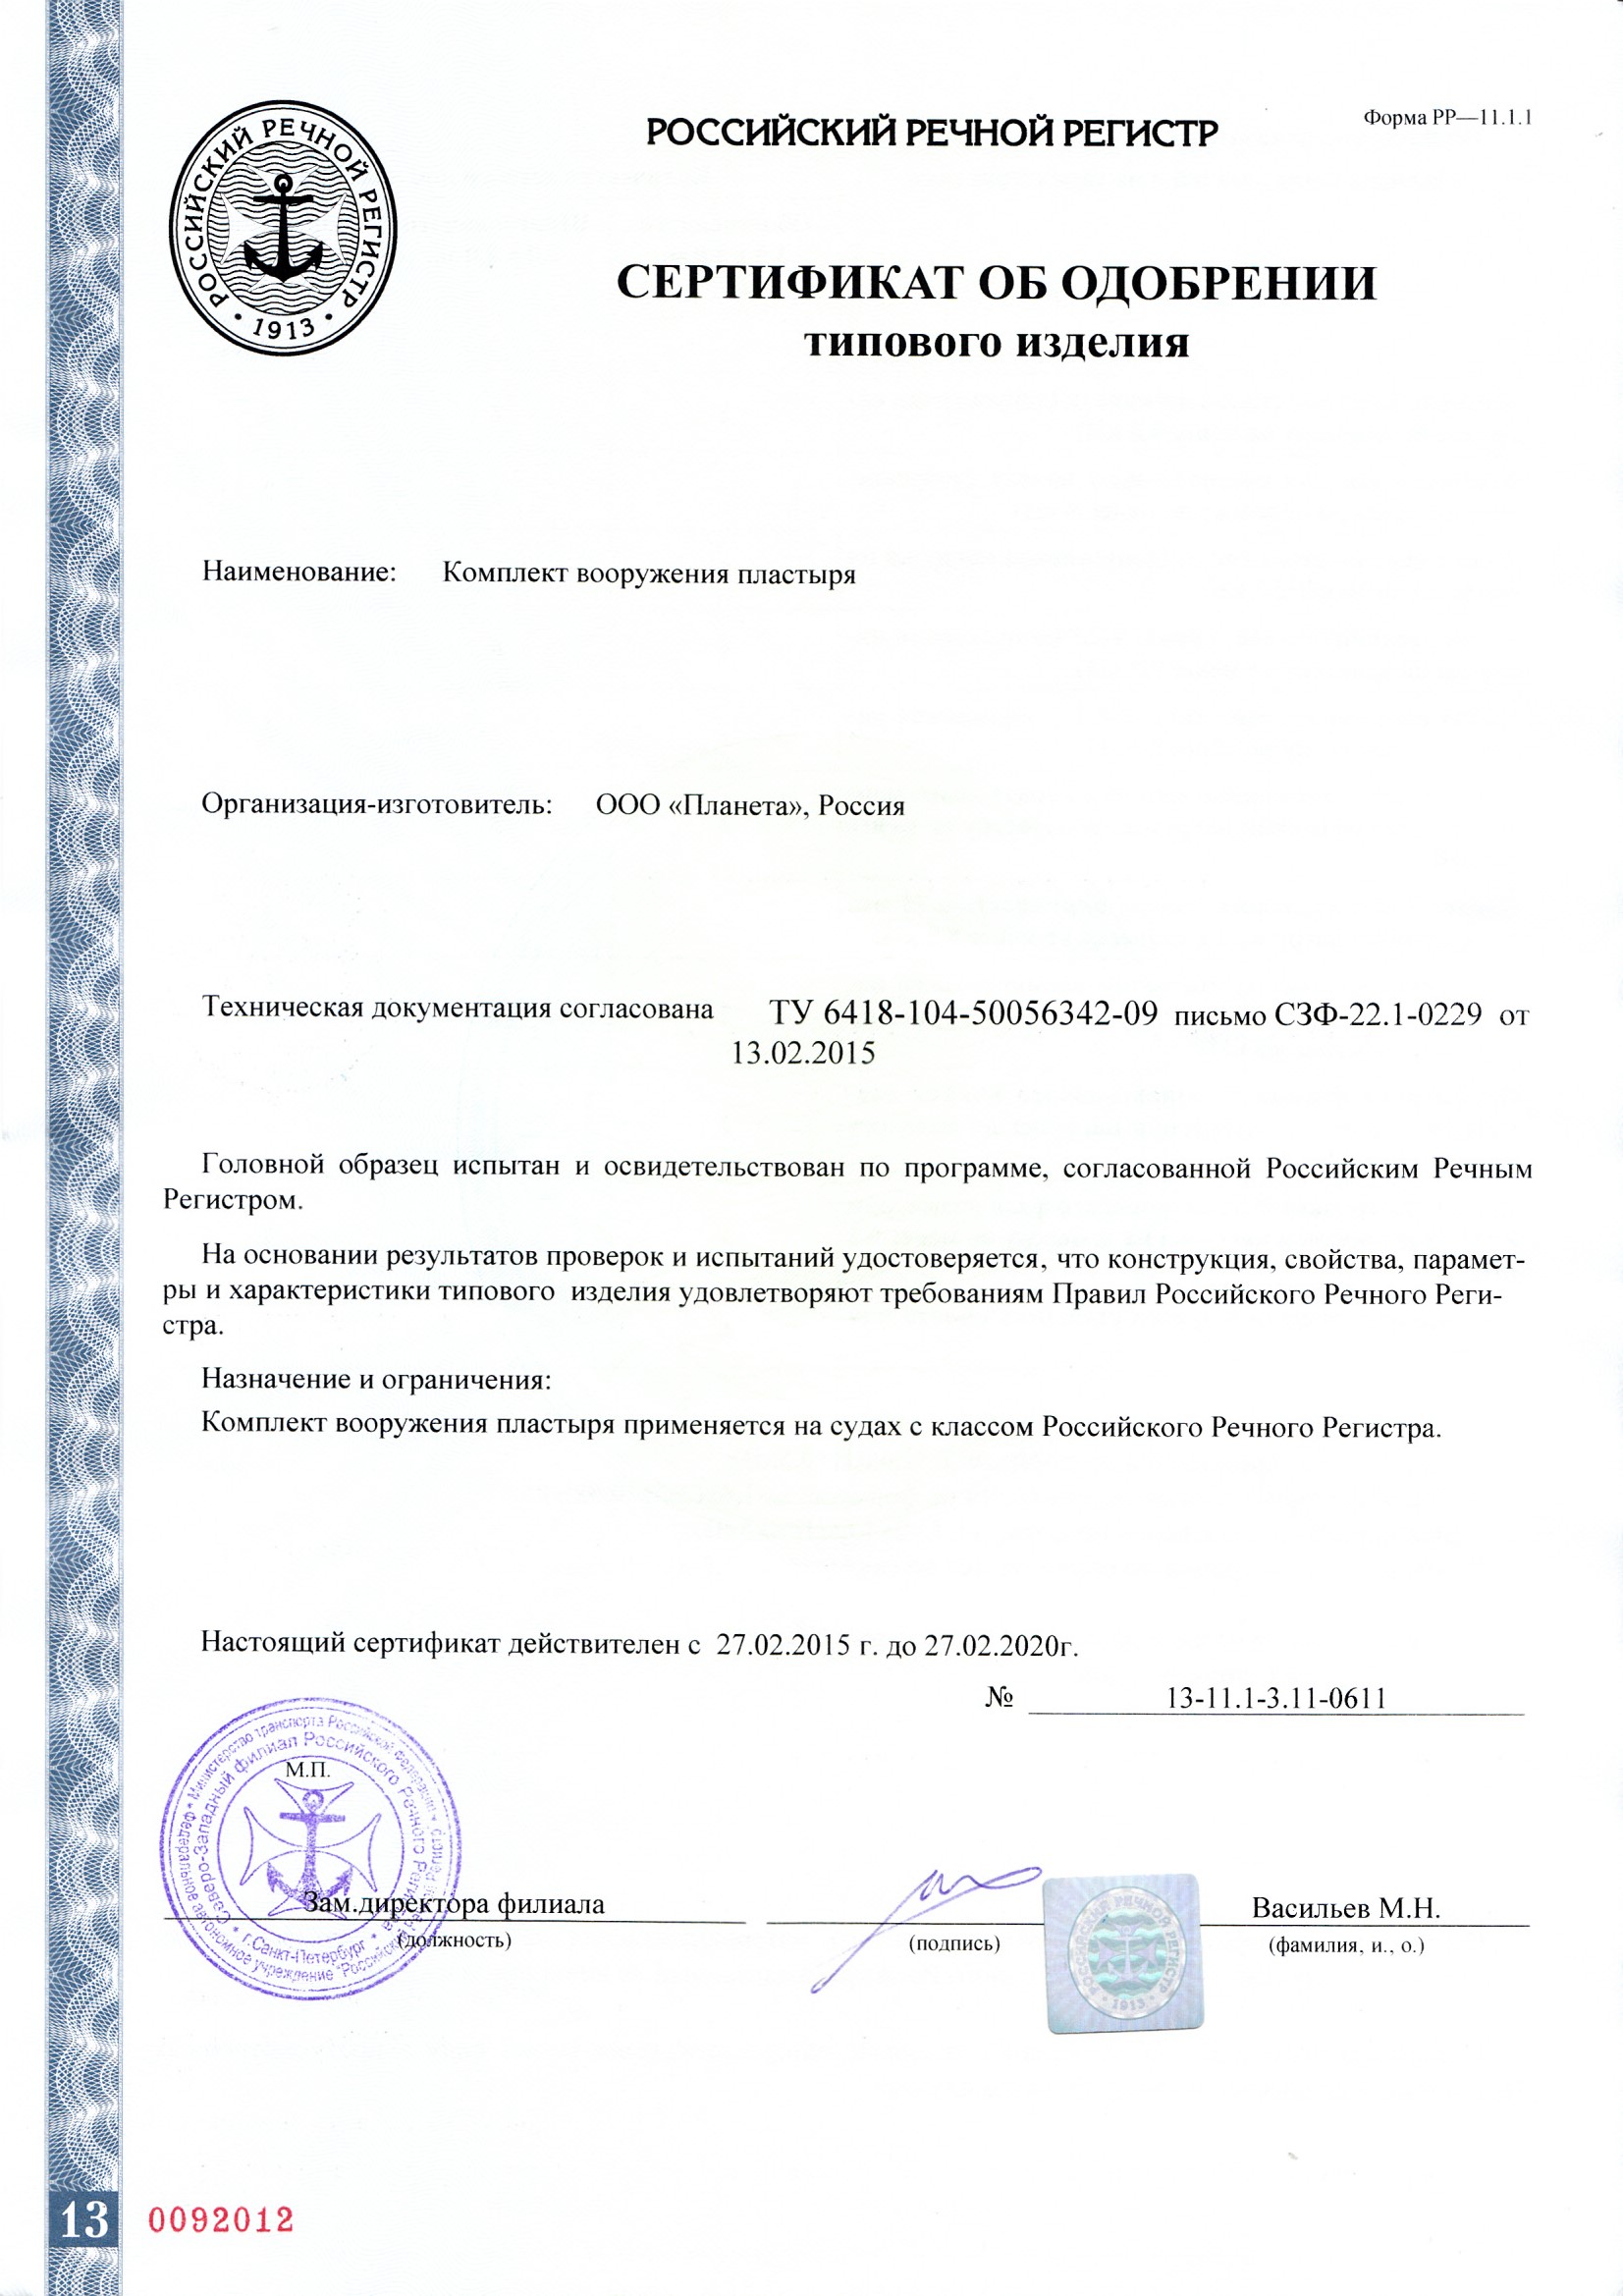 Сертификат  на Комплект вооружение пластыря СОТИ